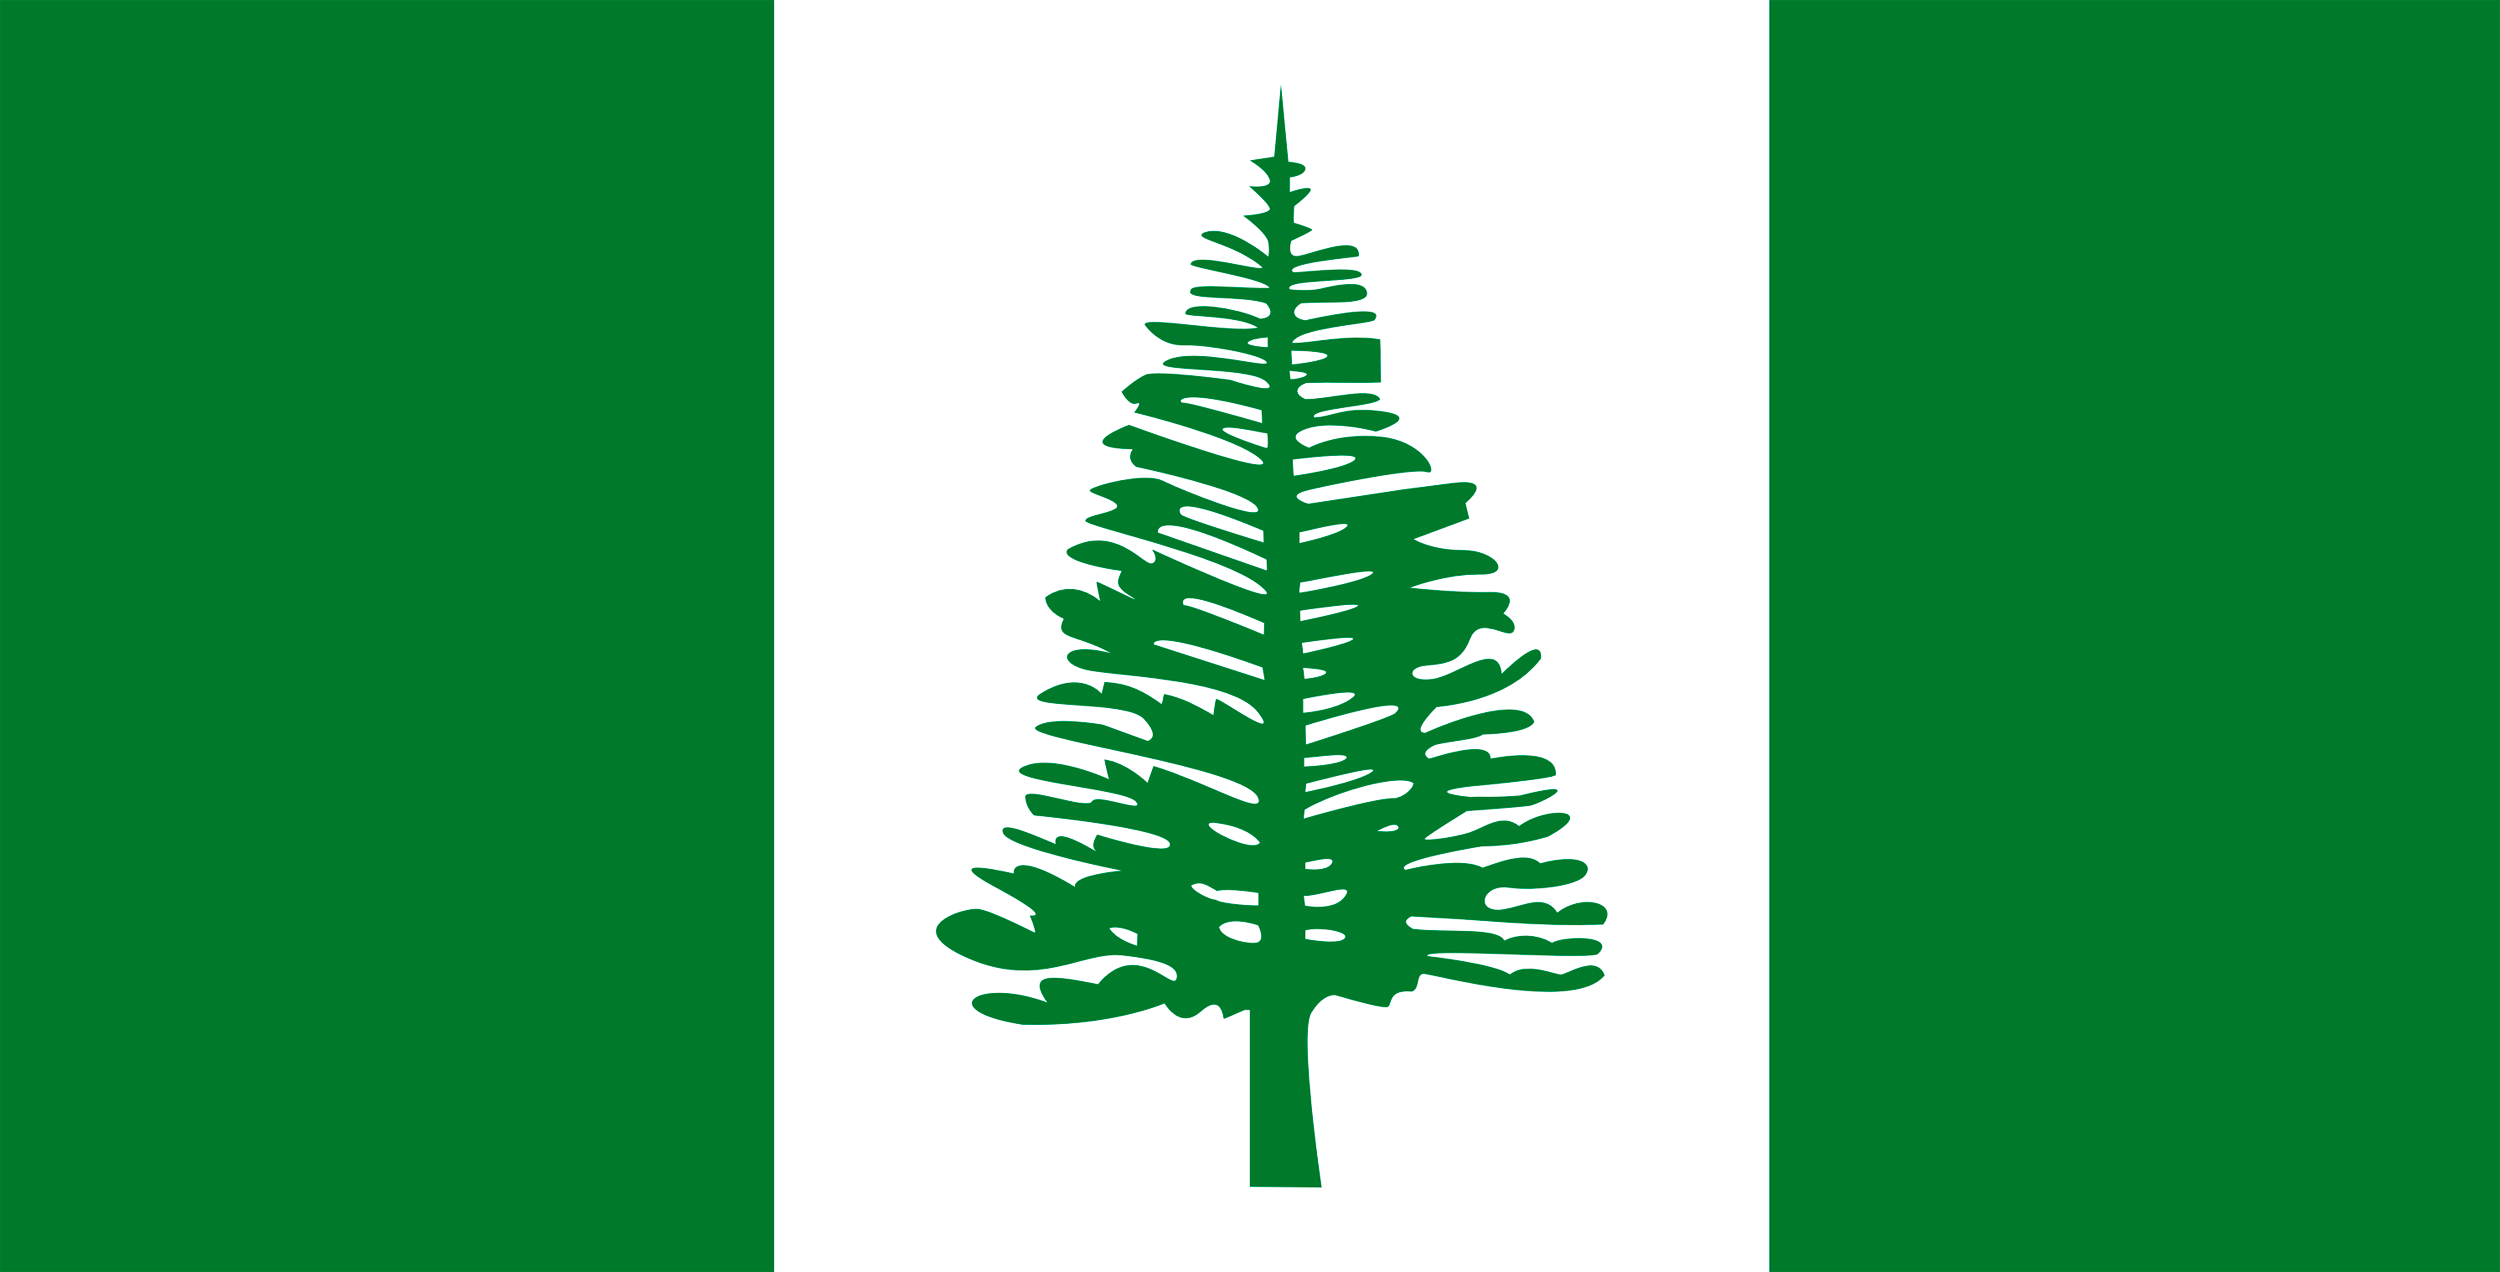 Norfolk_Island